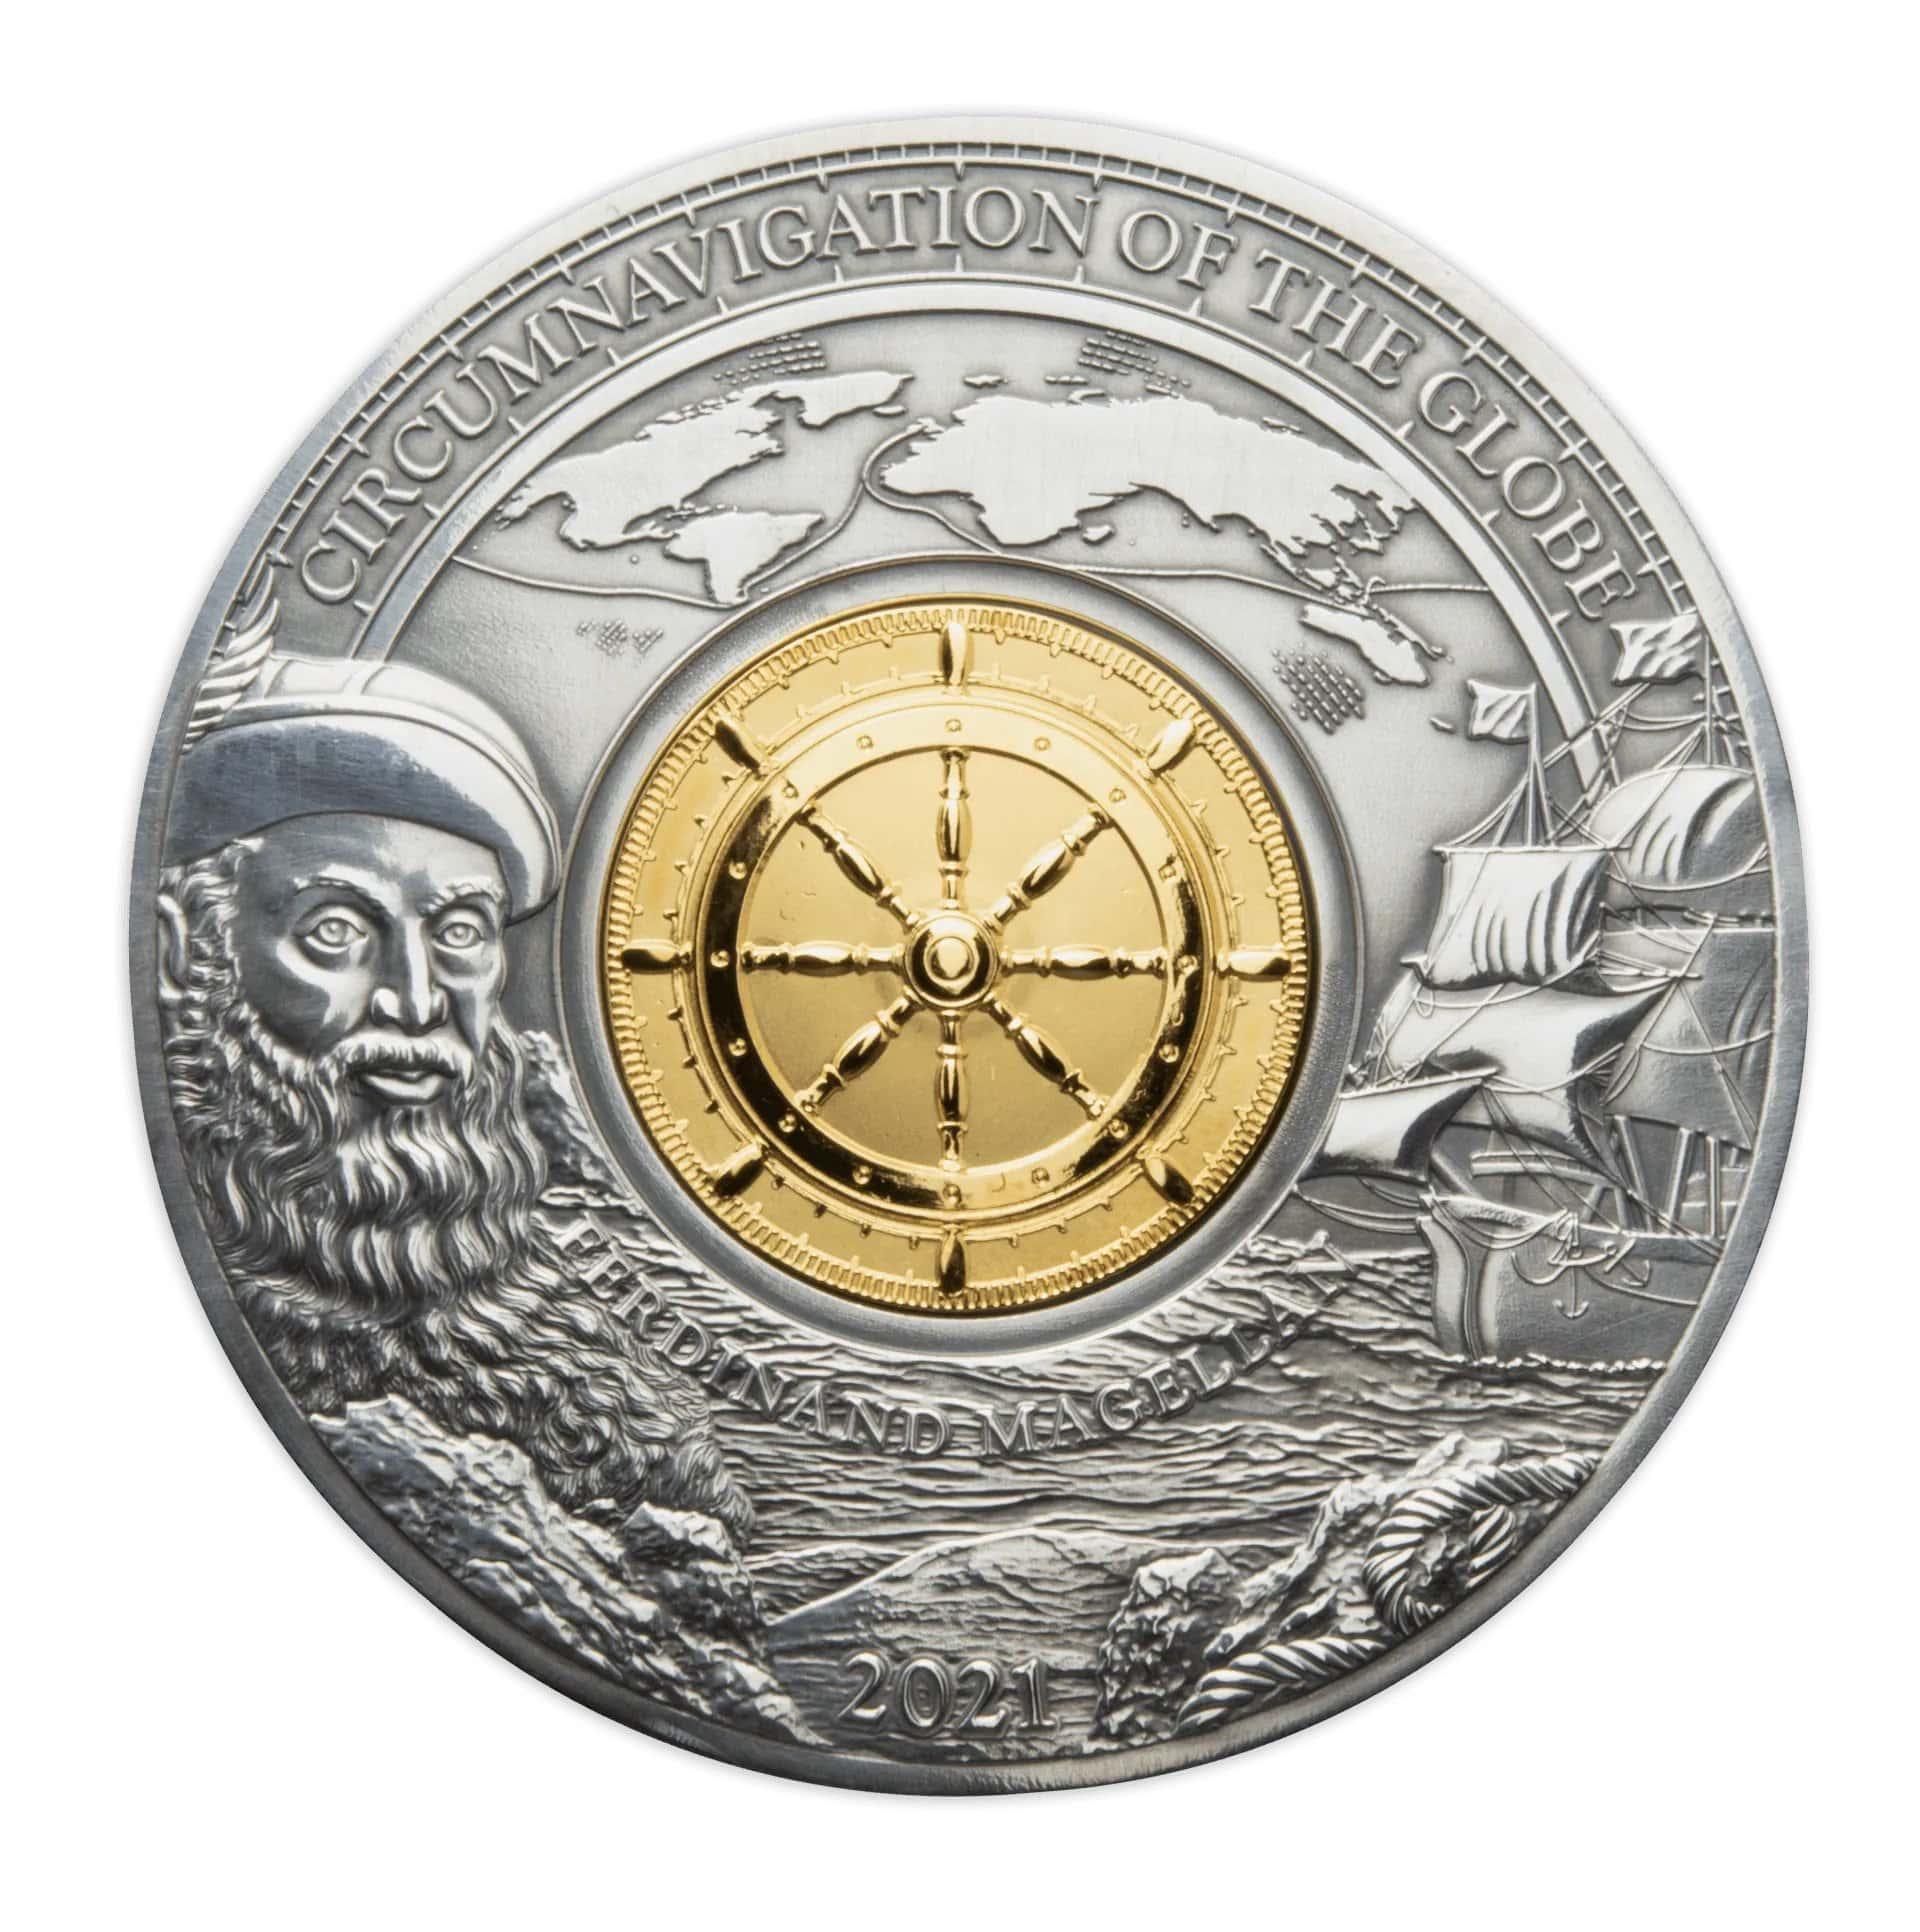 CIRCUMNAVIGATION OF THE WORLD – FERDINAND MAGELLAN 500TH ANNIVERSARY 3 oz Silver Coin $5 Barbados 2021 - PARTHAVA COIN